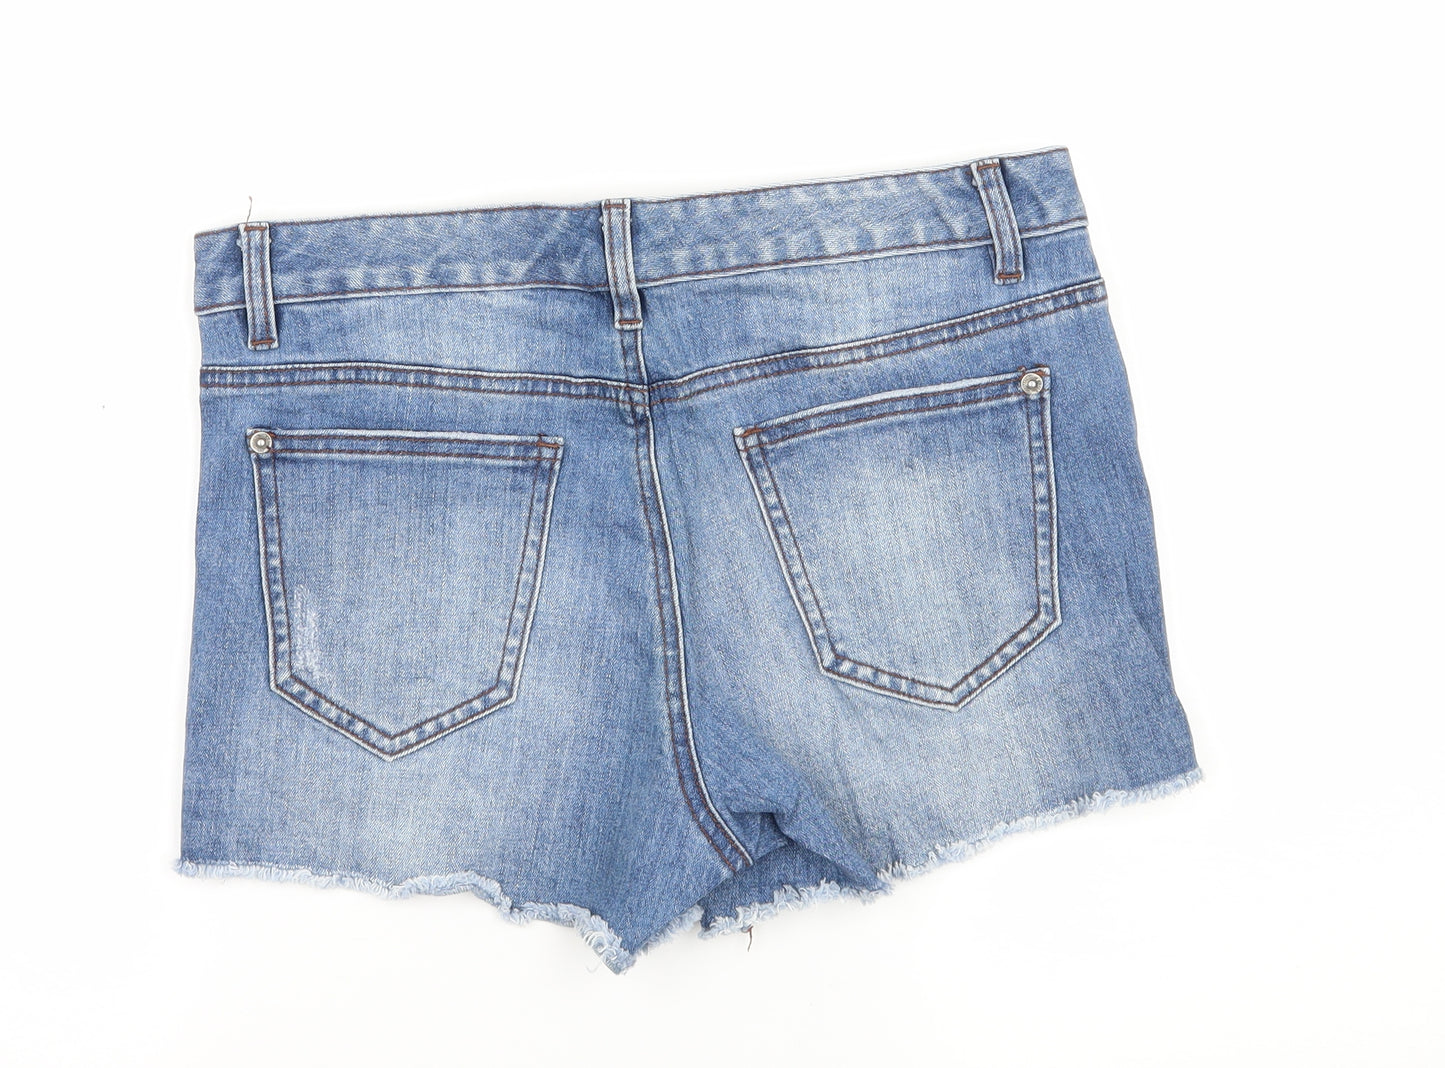 Jeanswest Womens Blue Floral Denim Hot Pants Shorts Size 28